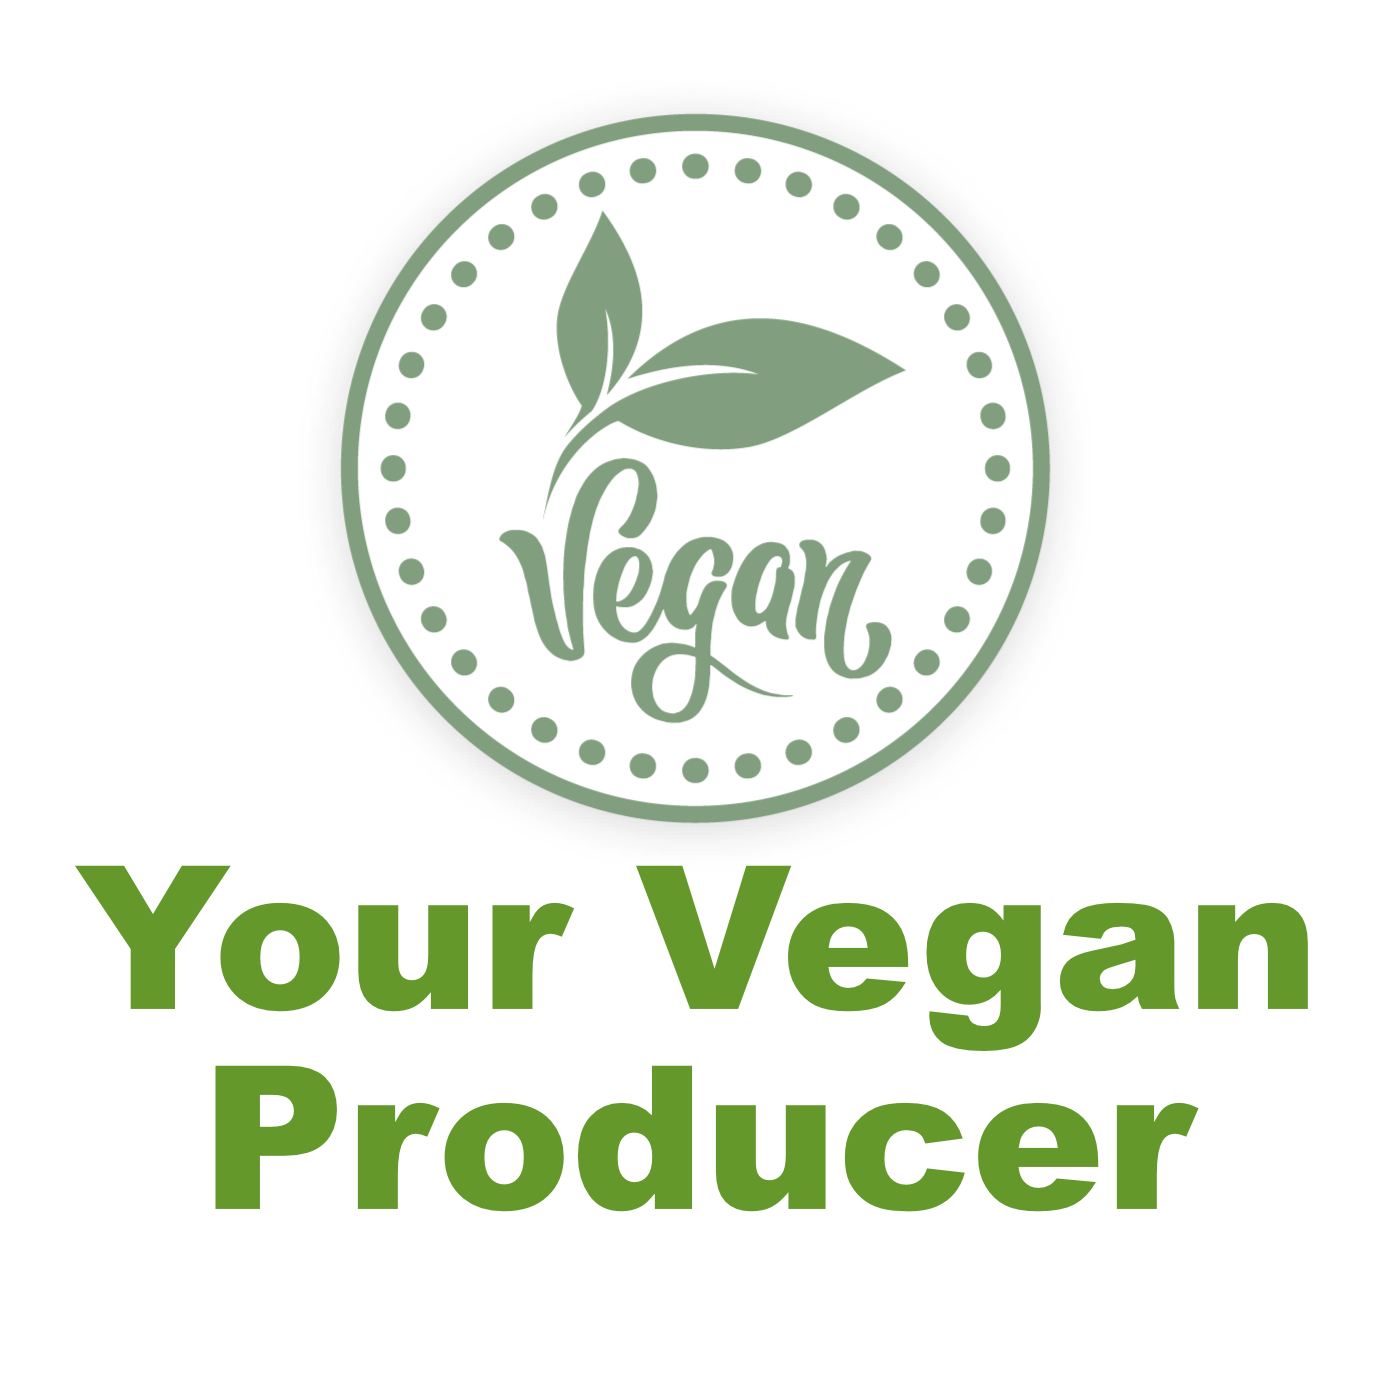 Your Vegan Producer